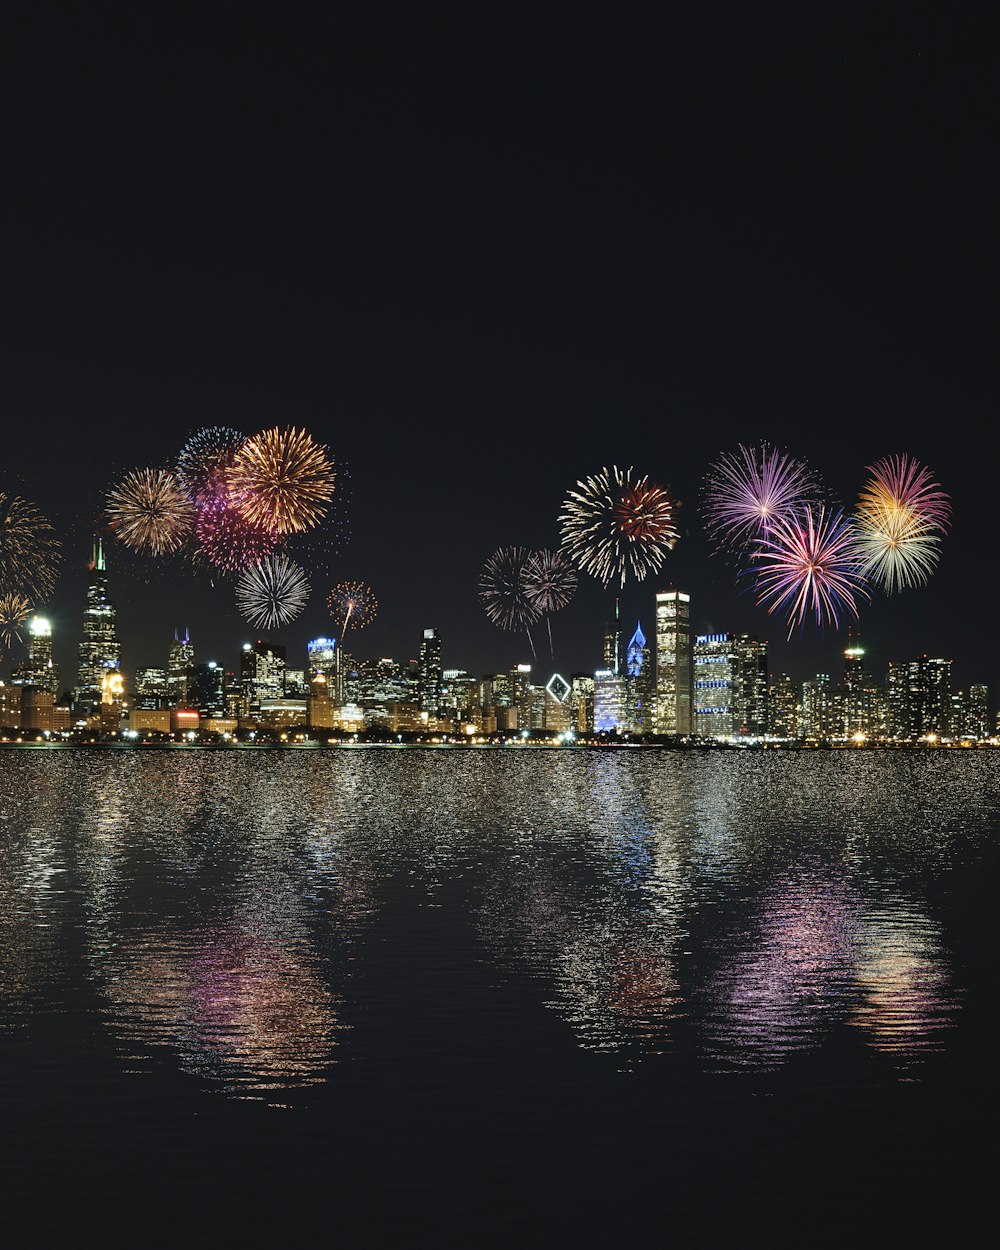 skyline buildings under fireworks display